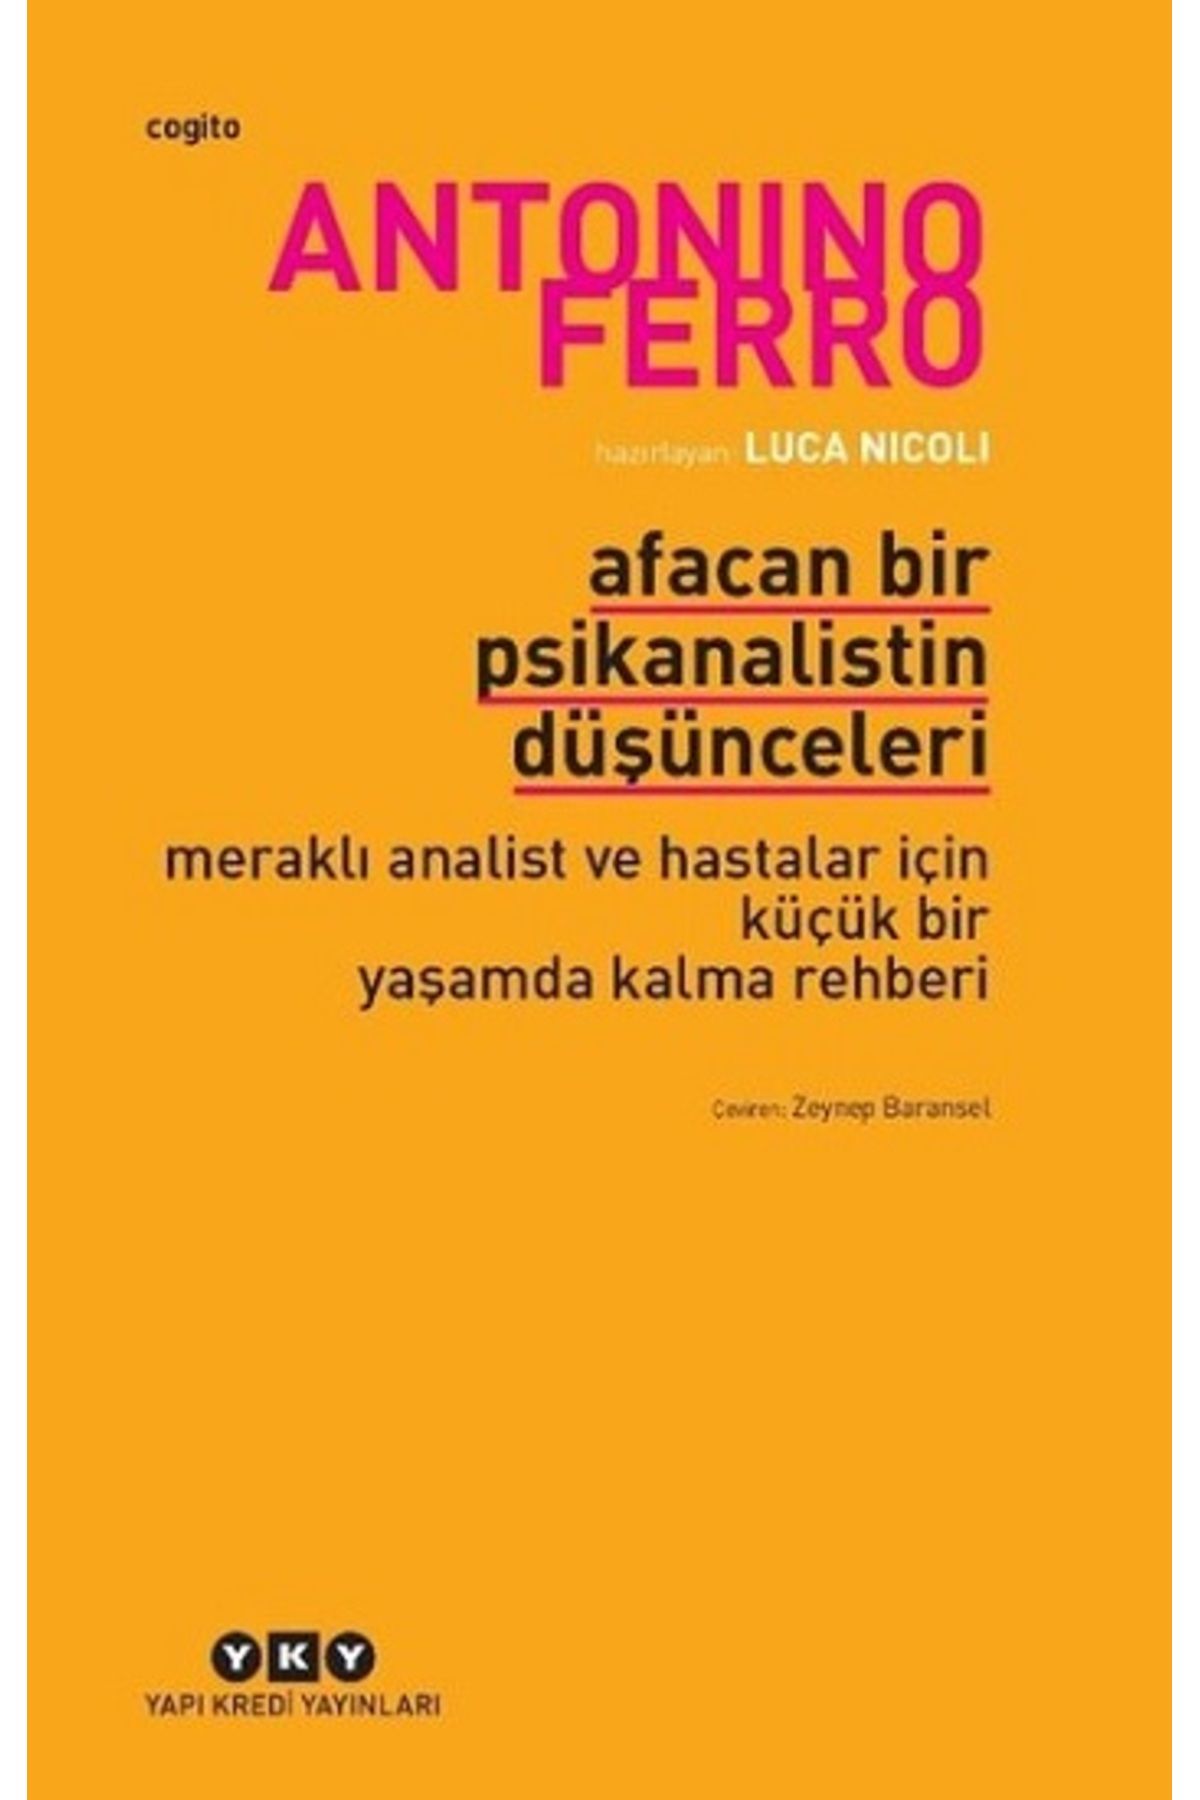 Yapı Kredi Yayınları Afacan Bir Psikanalistin Düşünceleri kitabı - Antonino Ferro - Yapı Kredi Yayınları